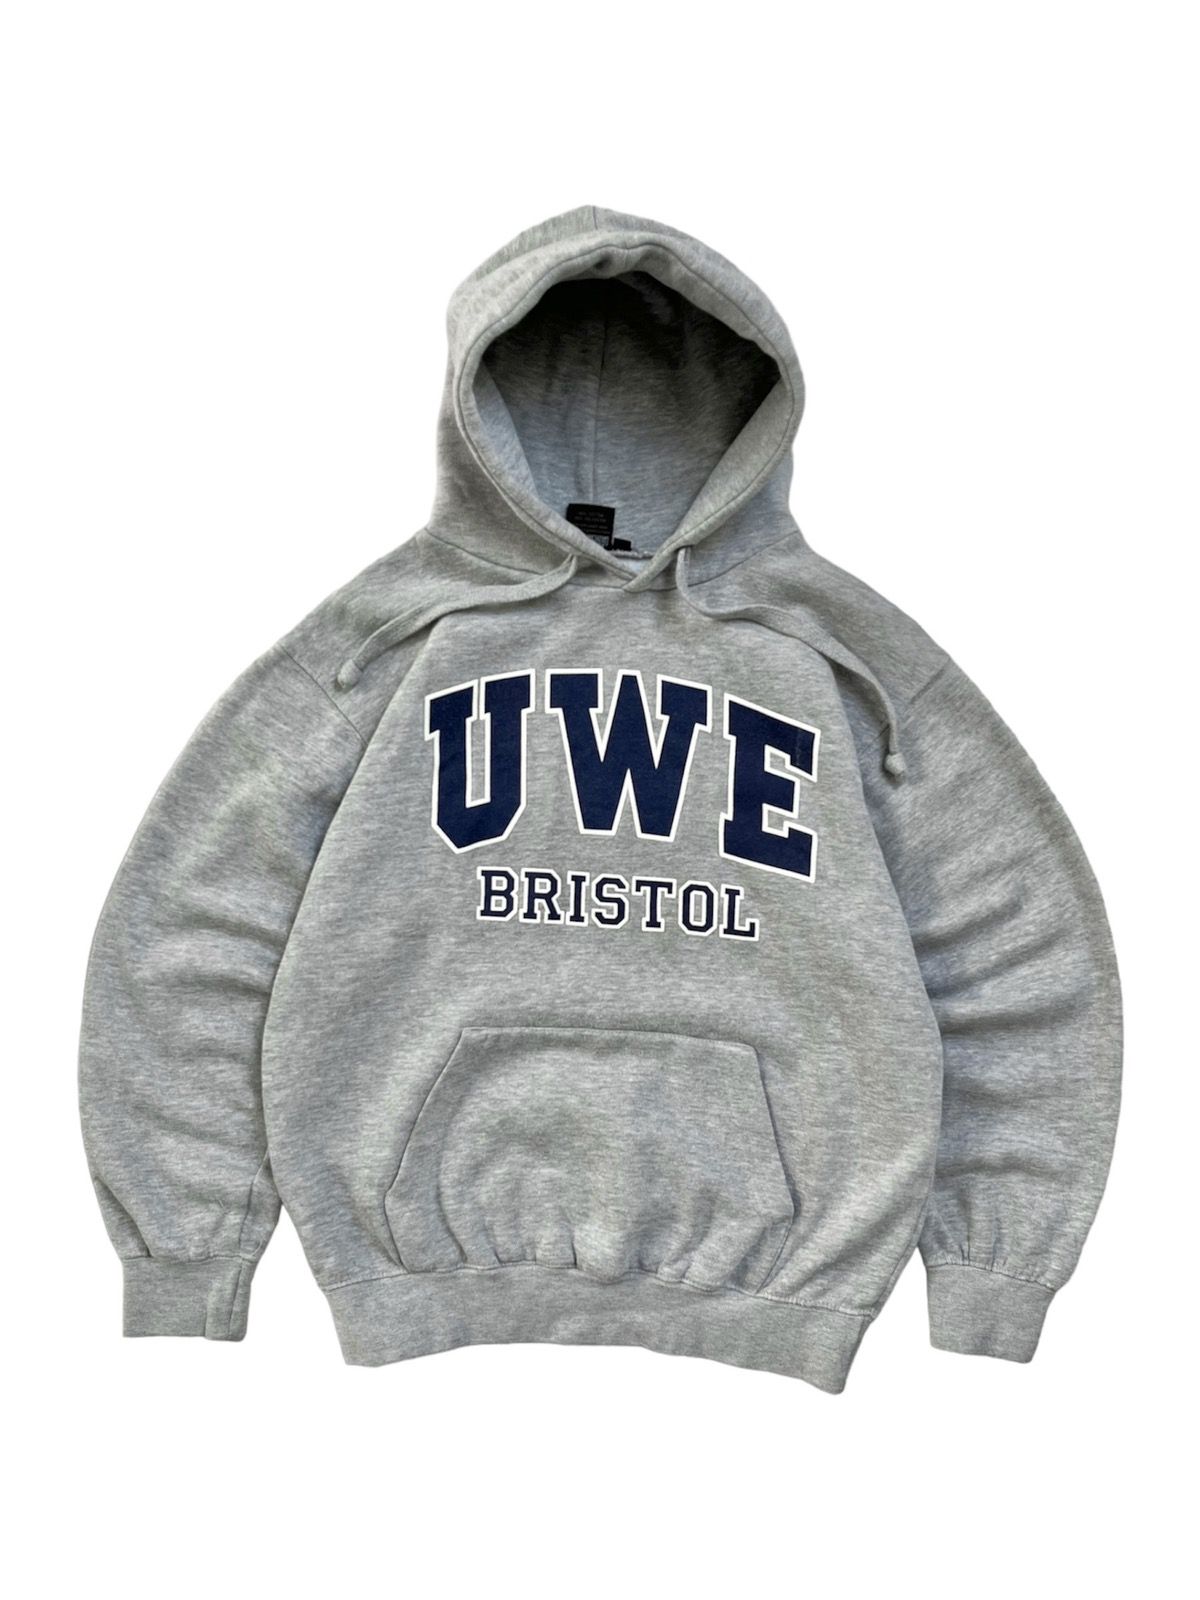 Pre-owned American College X Vintage Uwe Bristol Vintage University College Hoodie In Grey